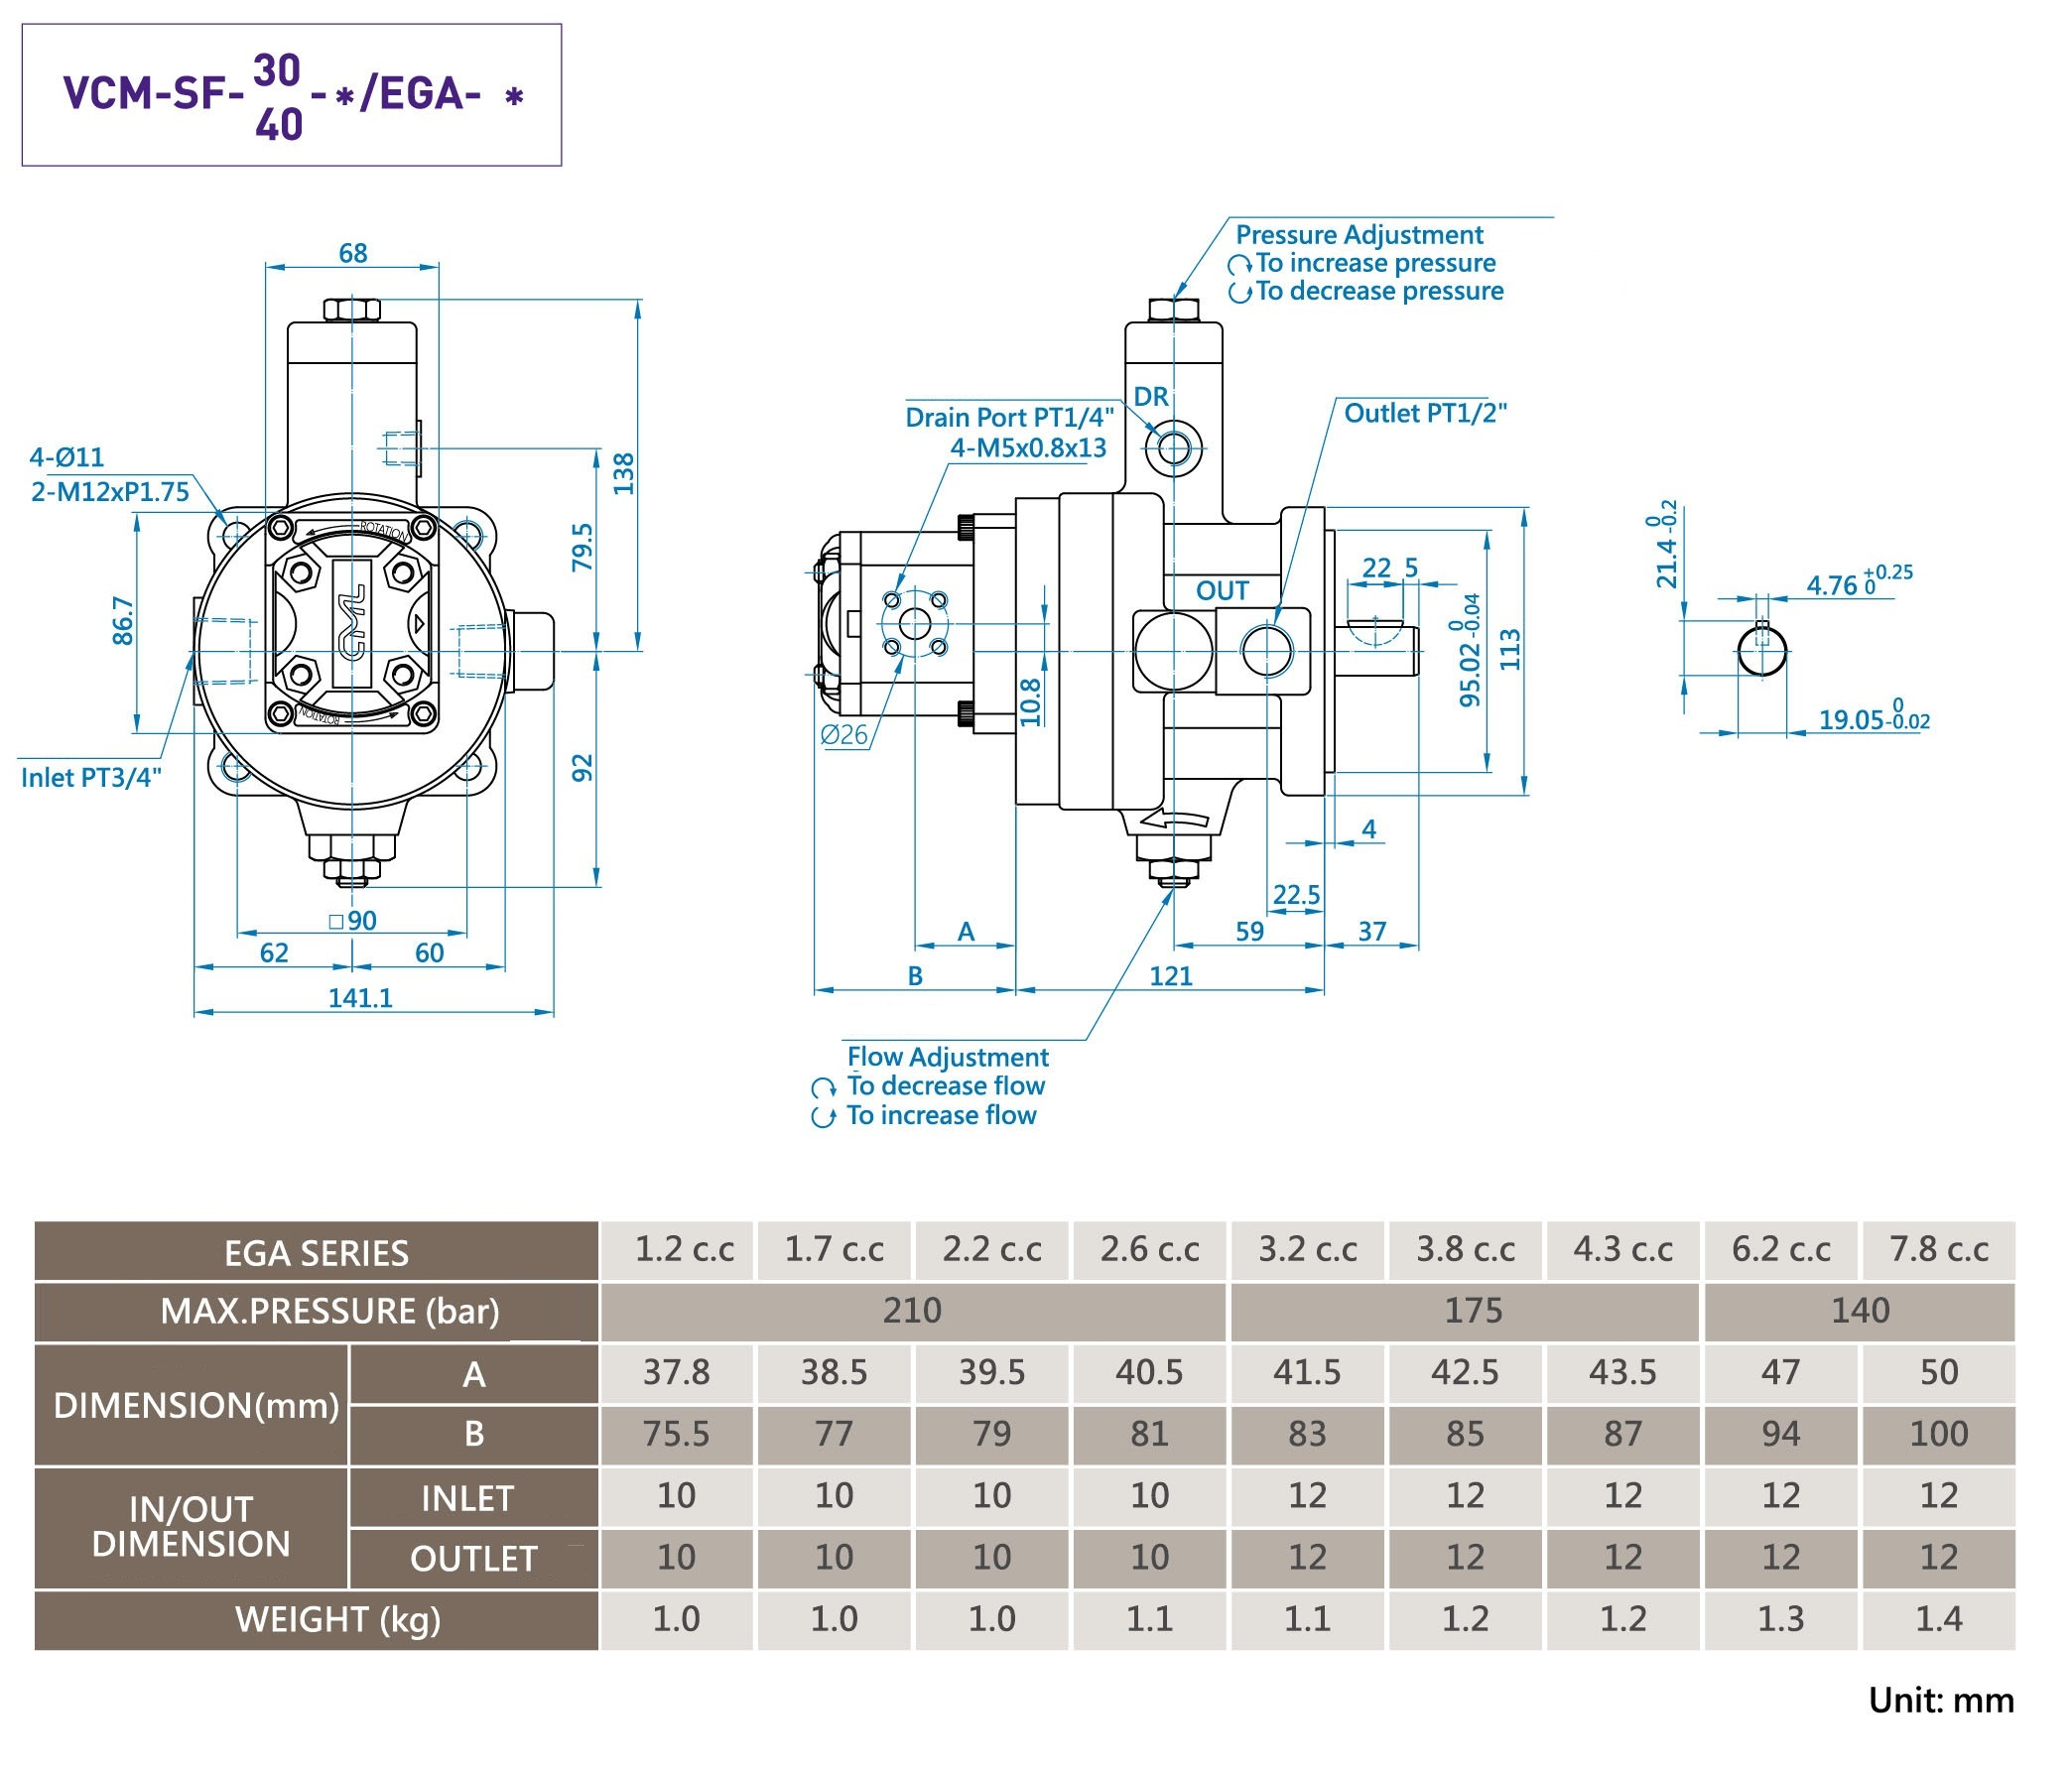 CML Variable Vane Pump With External Gear Pump VCM + EGA Measurement, Dimension, Diagram